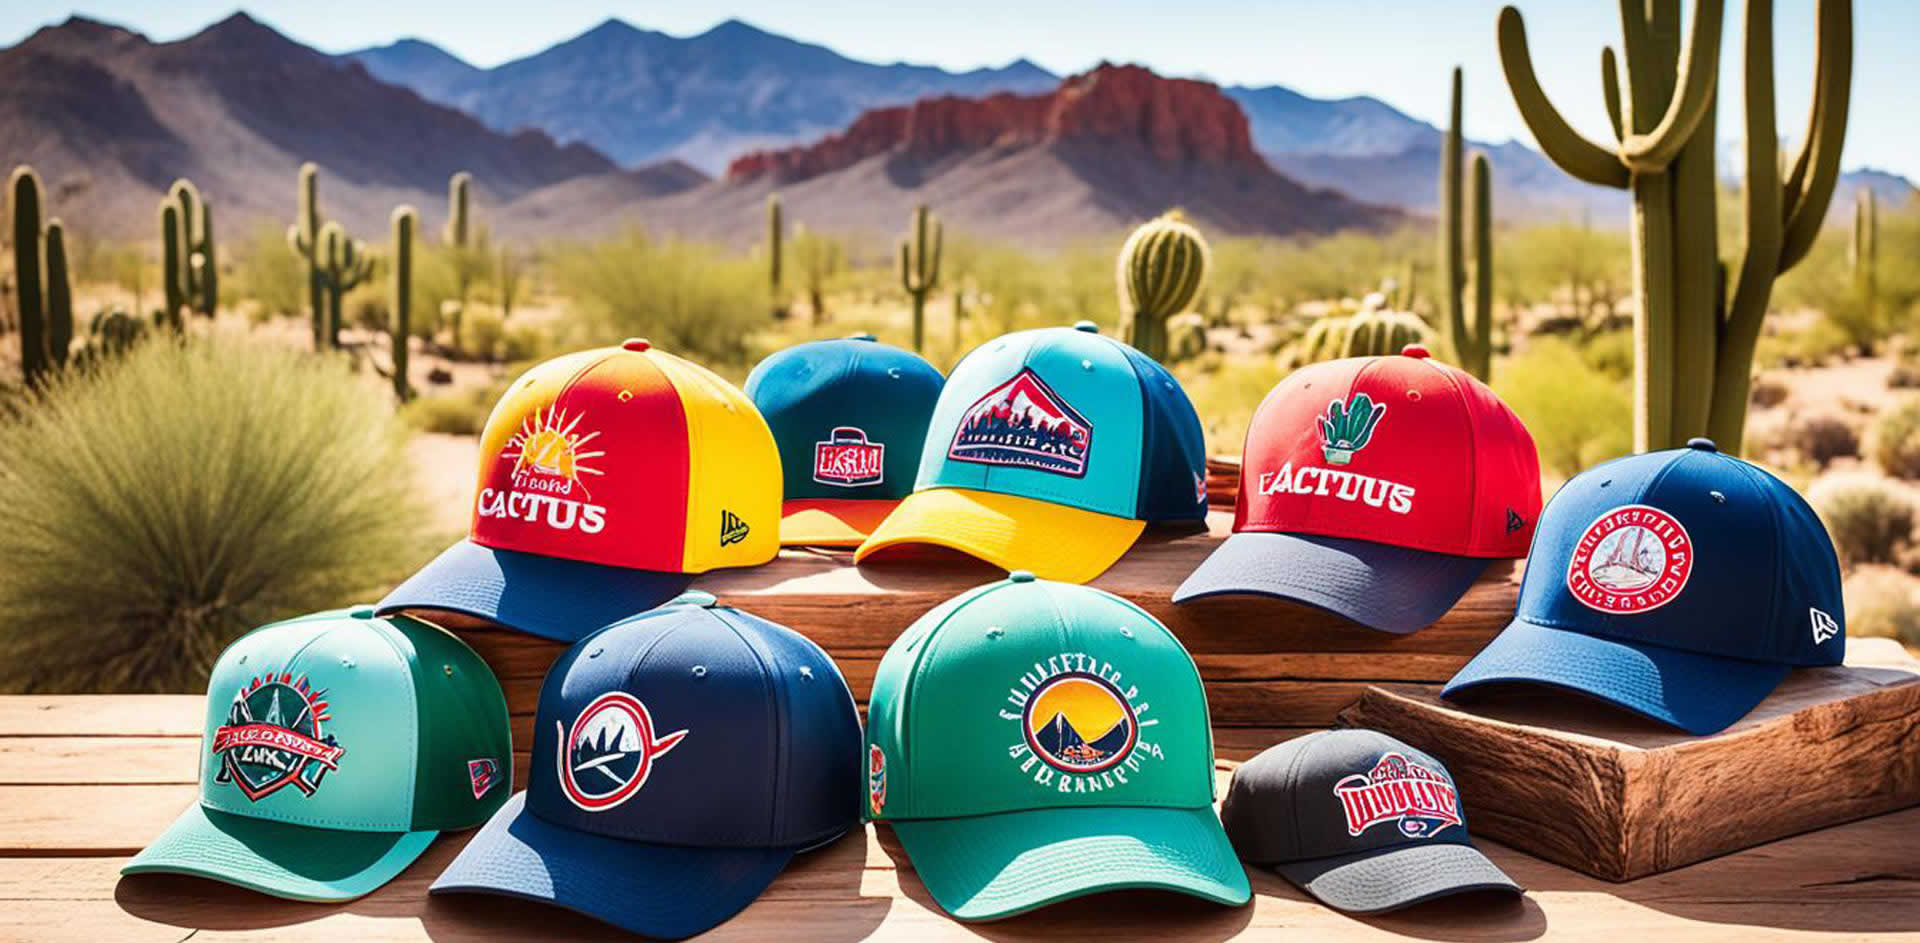 Cactus League Collectible Merchandise